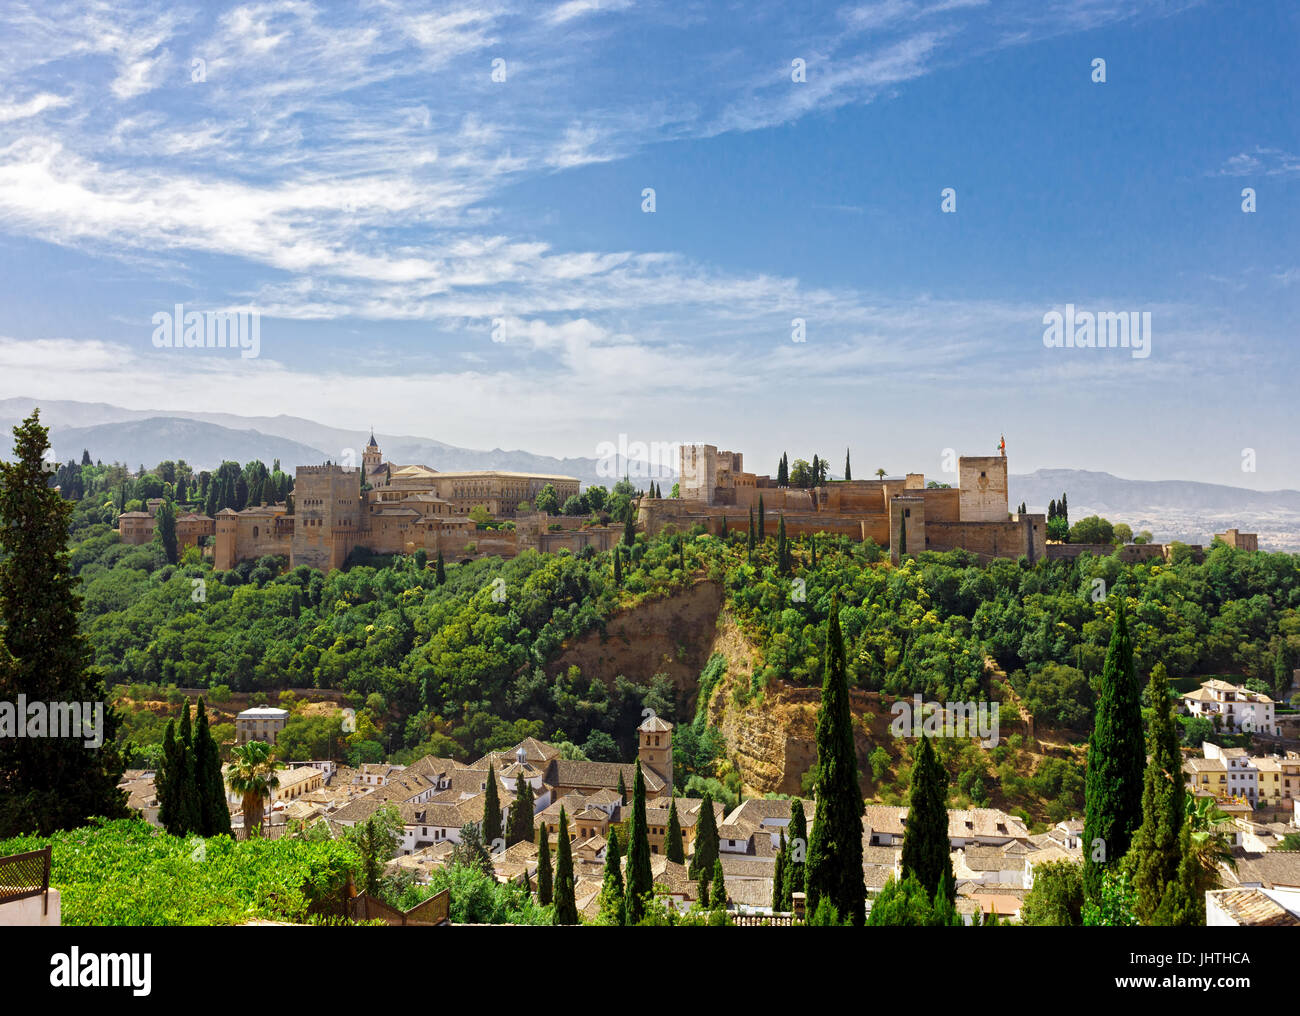 Palais de l'Alhambra à Grenade, Espagne. vue panoramique sur l'ancien palais arabe médiévale à l'andalousie. célèbre destination touristique. Banque D'Images